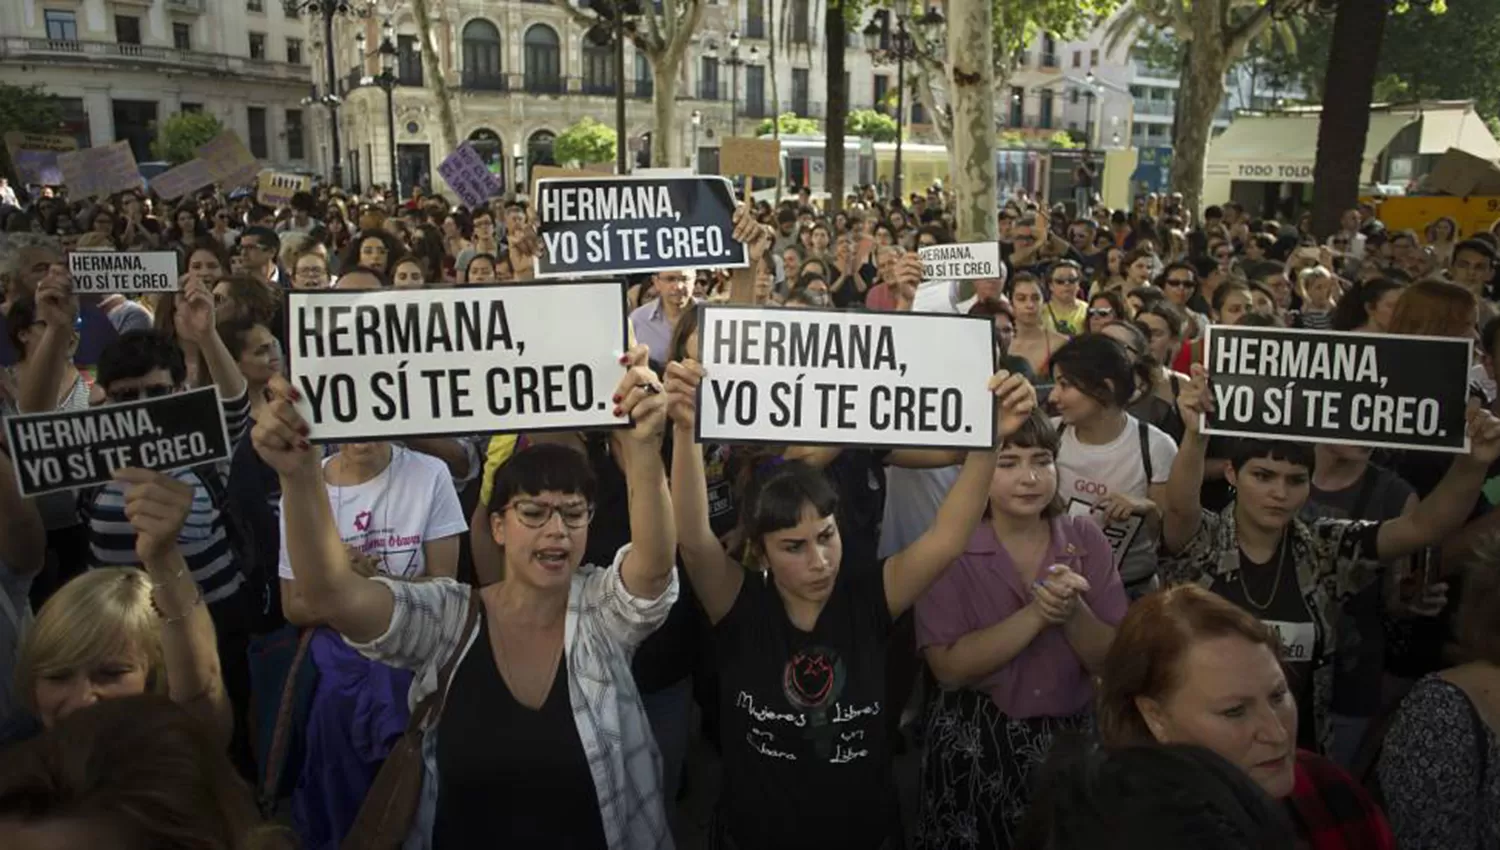 Protesta realizada hoy en Pamplona contra el fallo absolutorio. FOTO TOMADA DE ELPAIS.COM